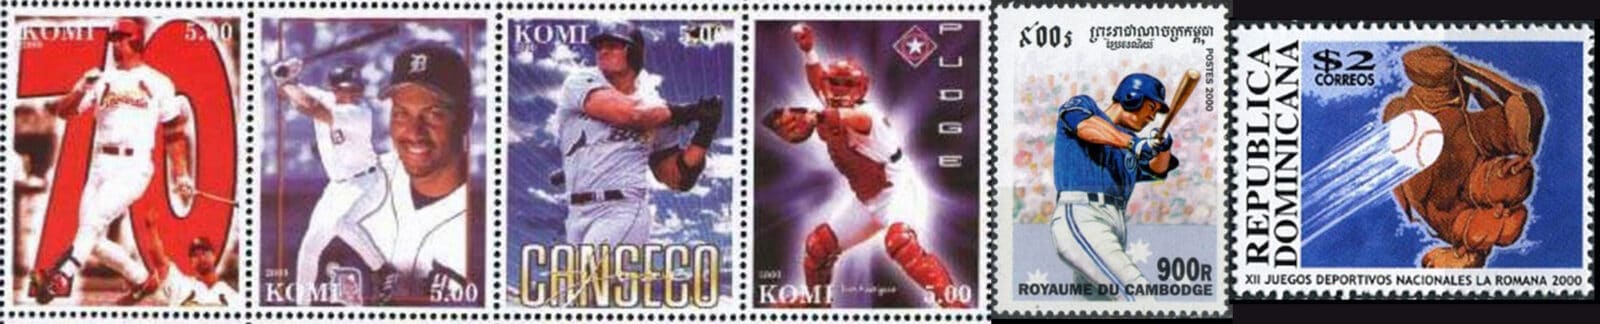 2000 Baseball Postage Stamps Header